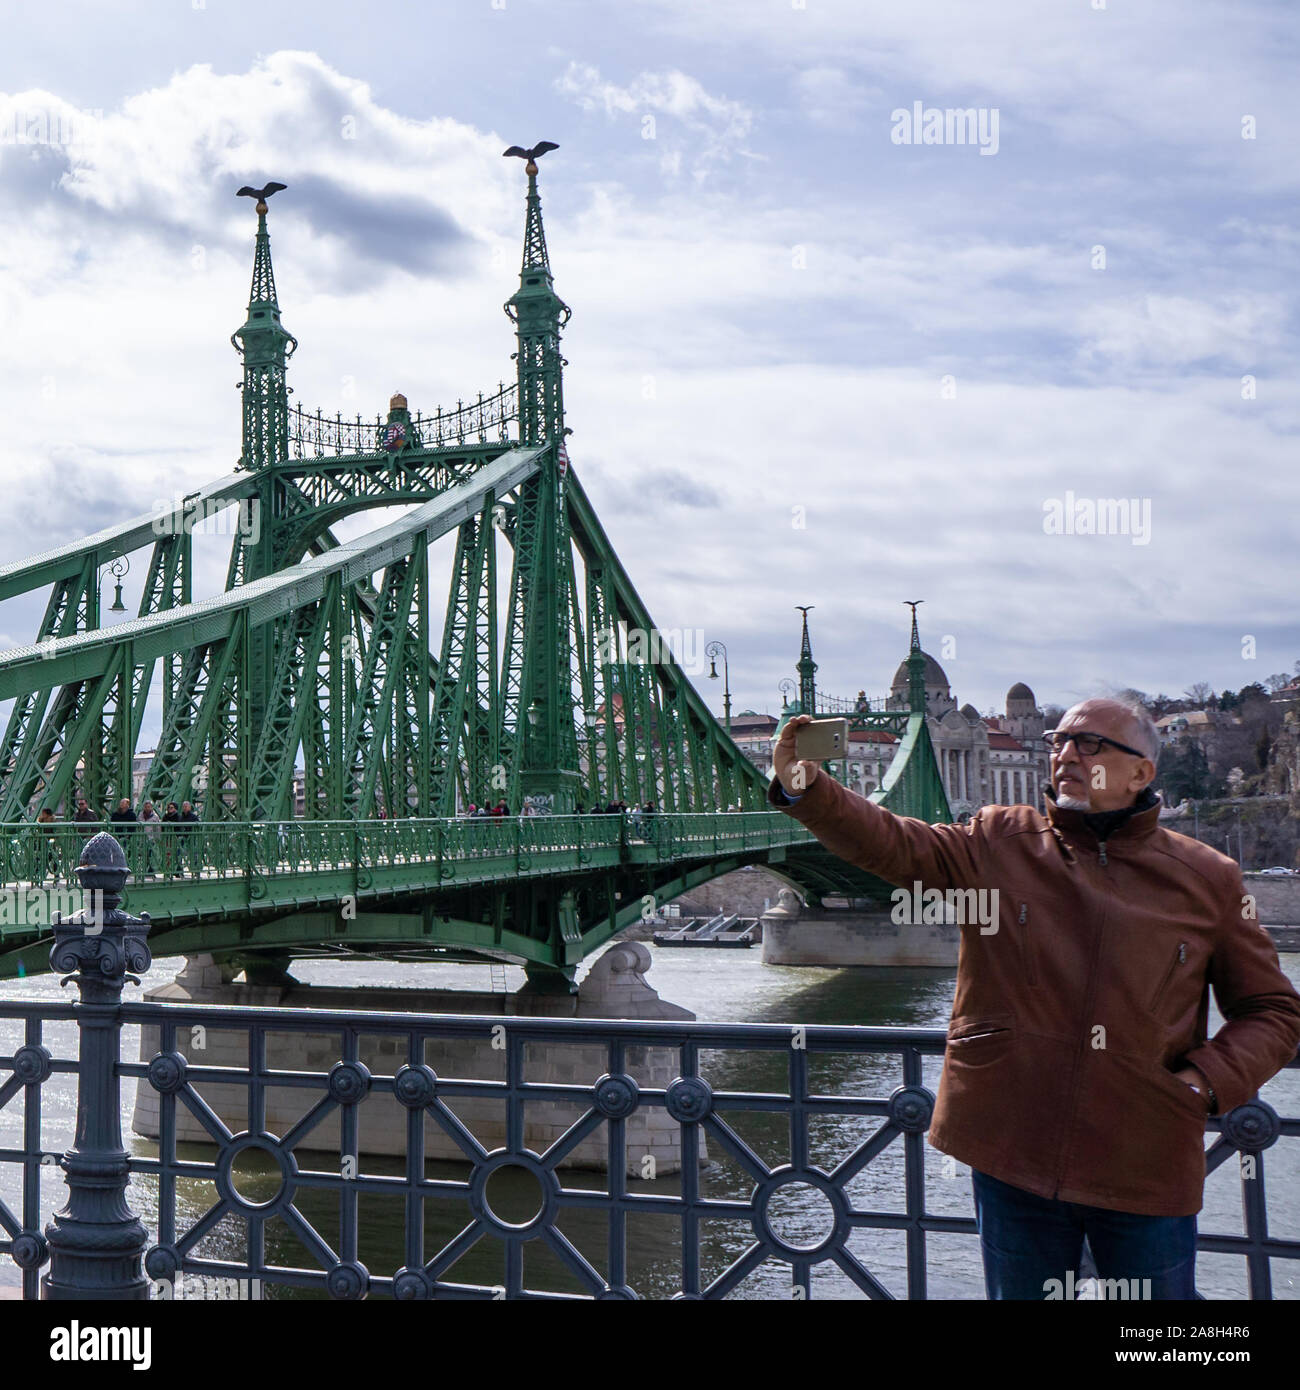 Budapest, Ungheria - 03 16 2019: turisti fanno un selfie utilizza lo smartphone su un ponte della Libertà (Szabadsag hid) di Budapest,l'Ungheria. Foto Stock